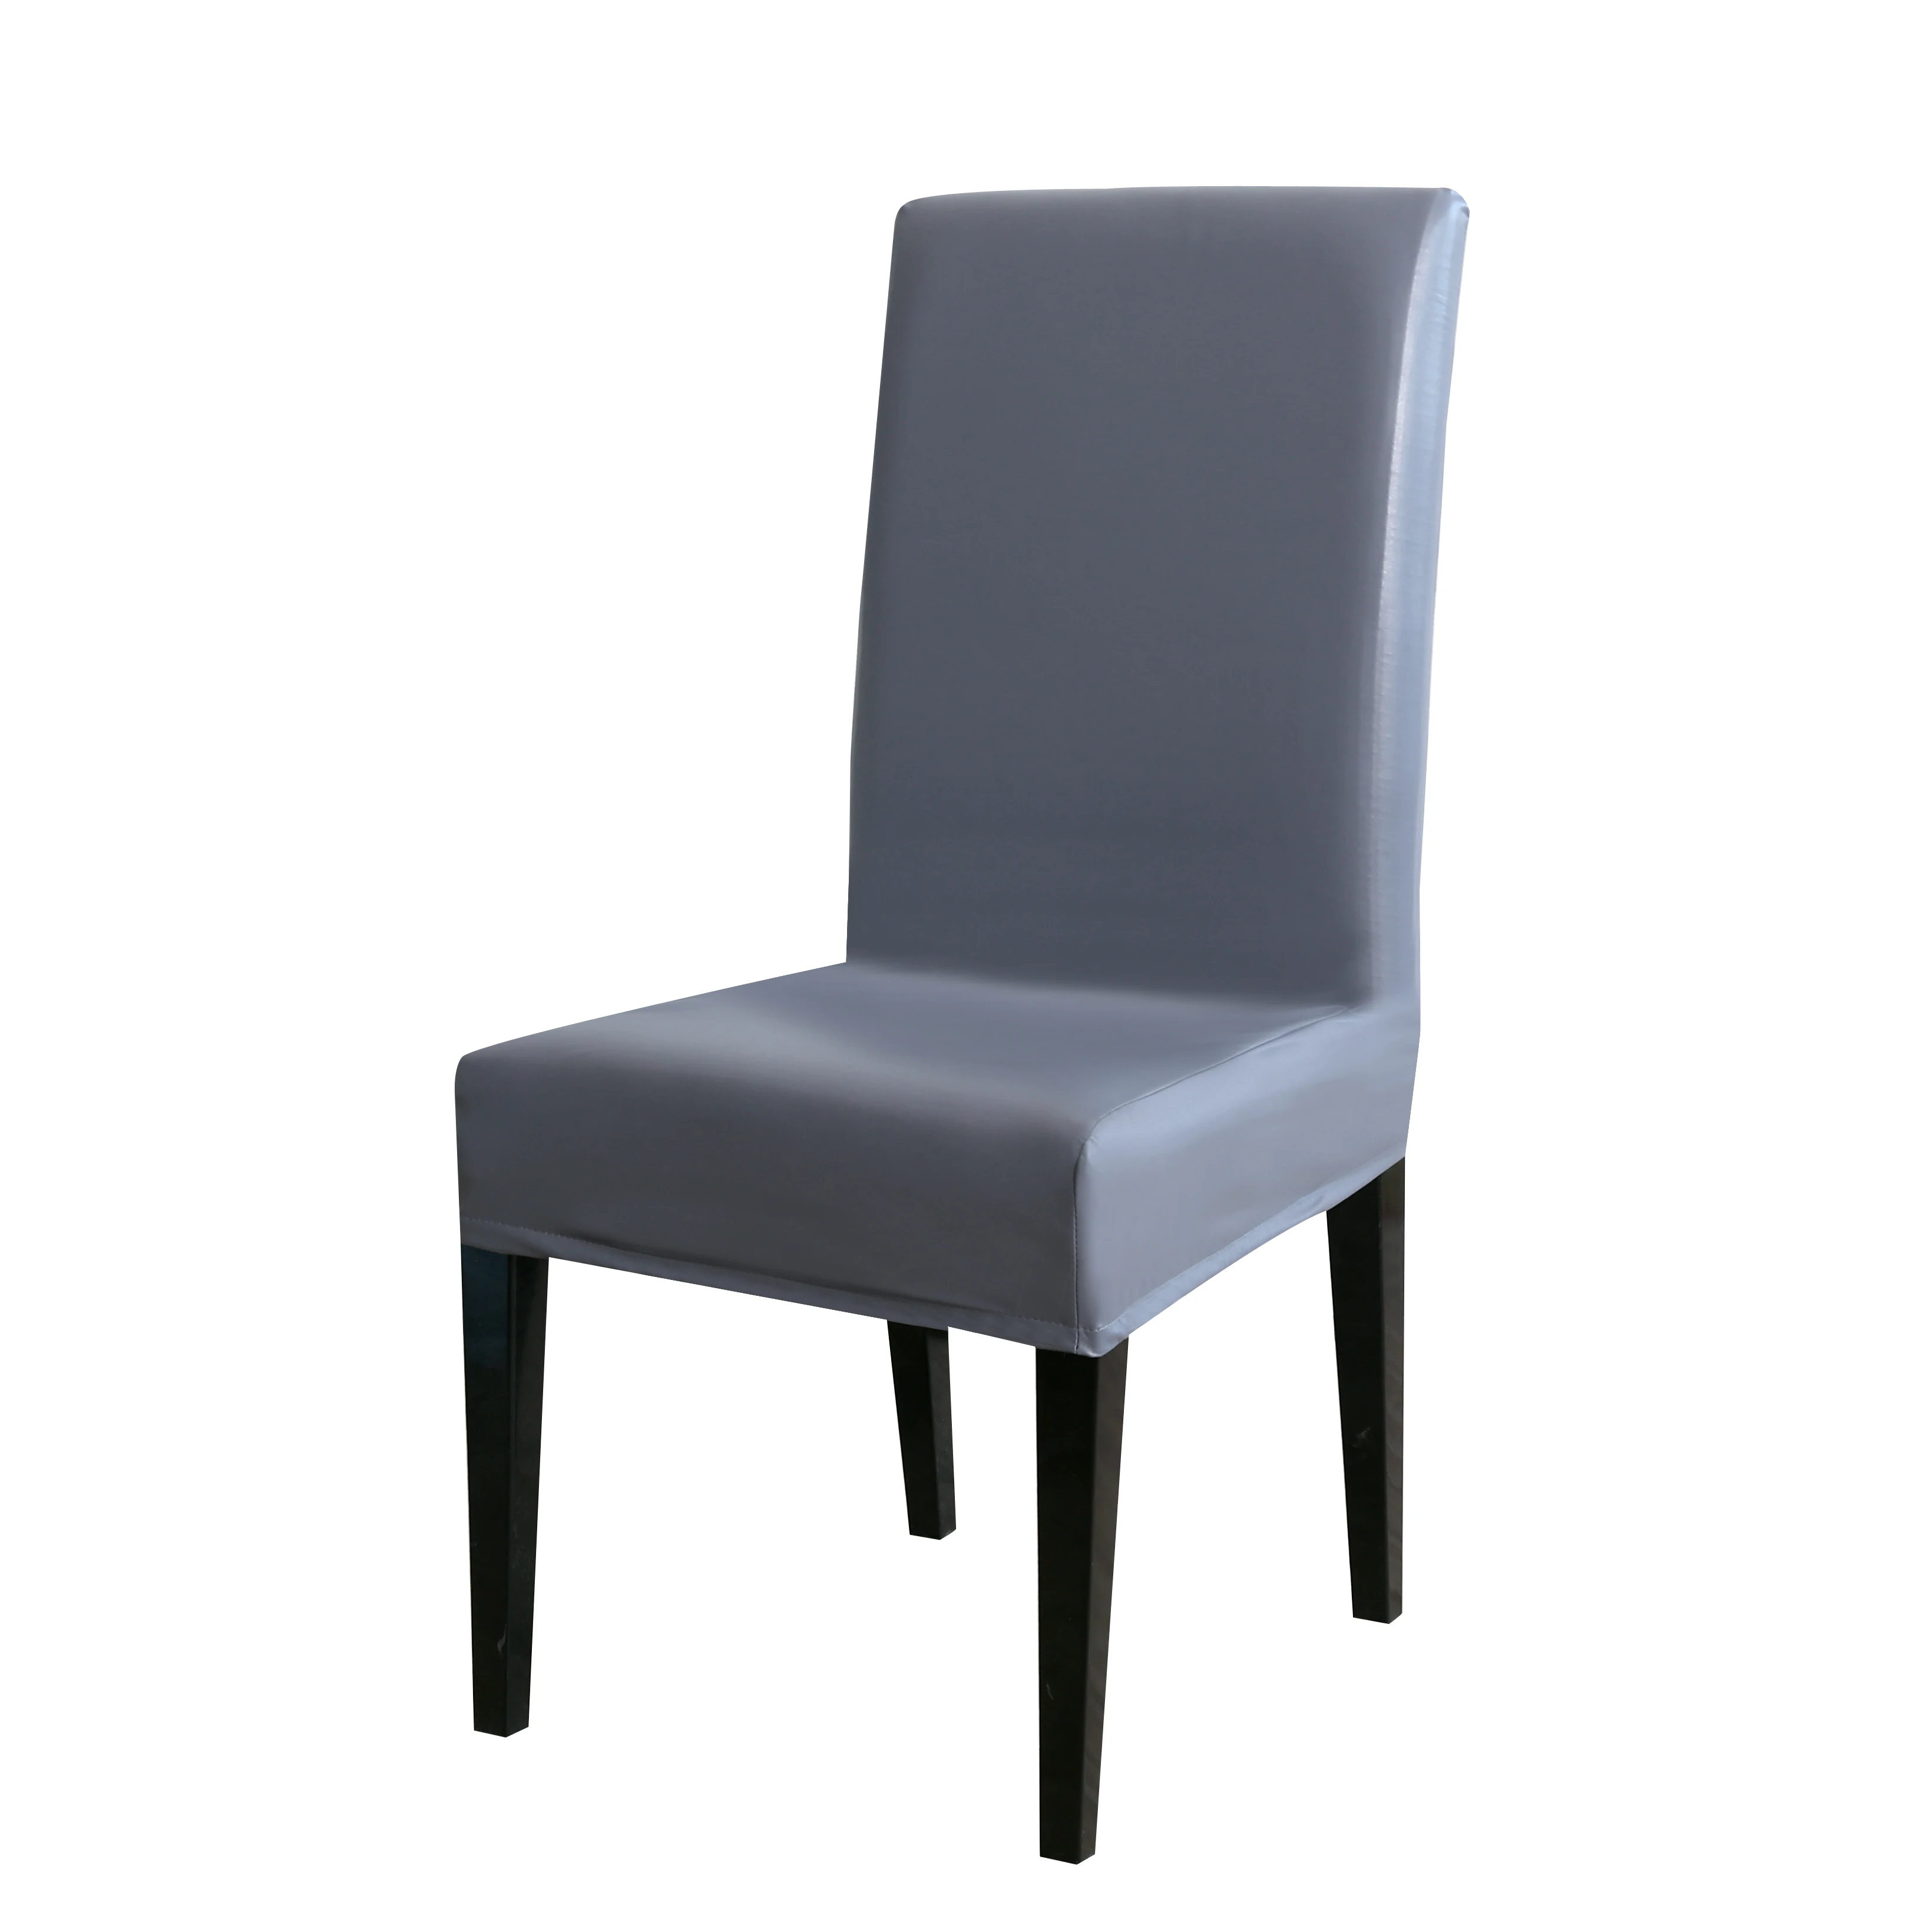 Стул из ПУ кожи Покрытие чистого цвета чехлы для стульев водонепроницаемый столовый набор чехлы для стульев гостиничные банкетные чехлы протектор стула CoverD30 - Цвет: Gray